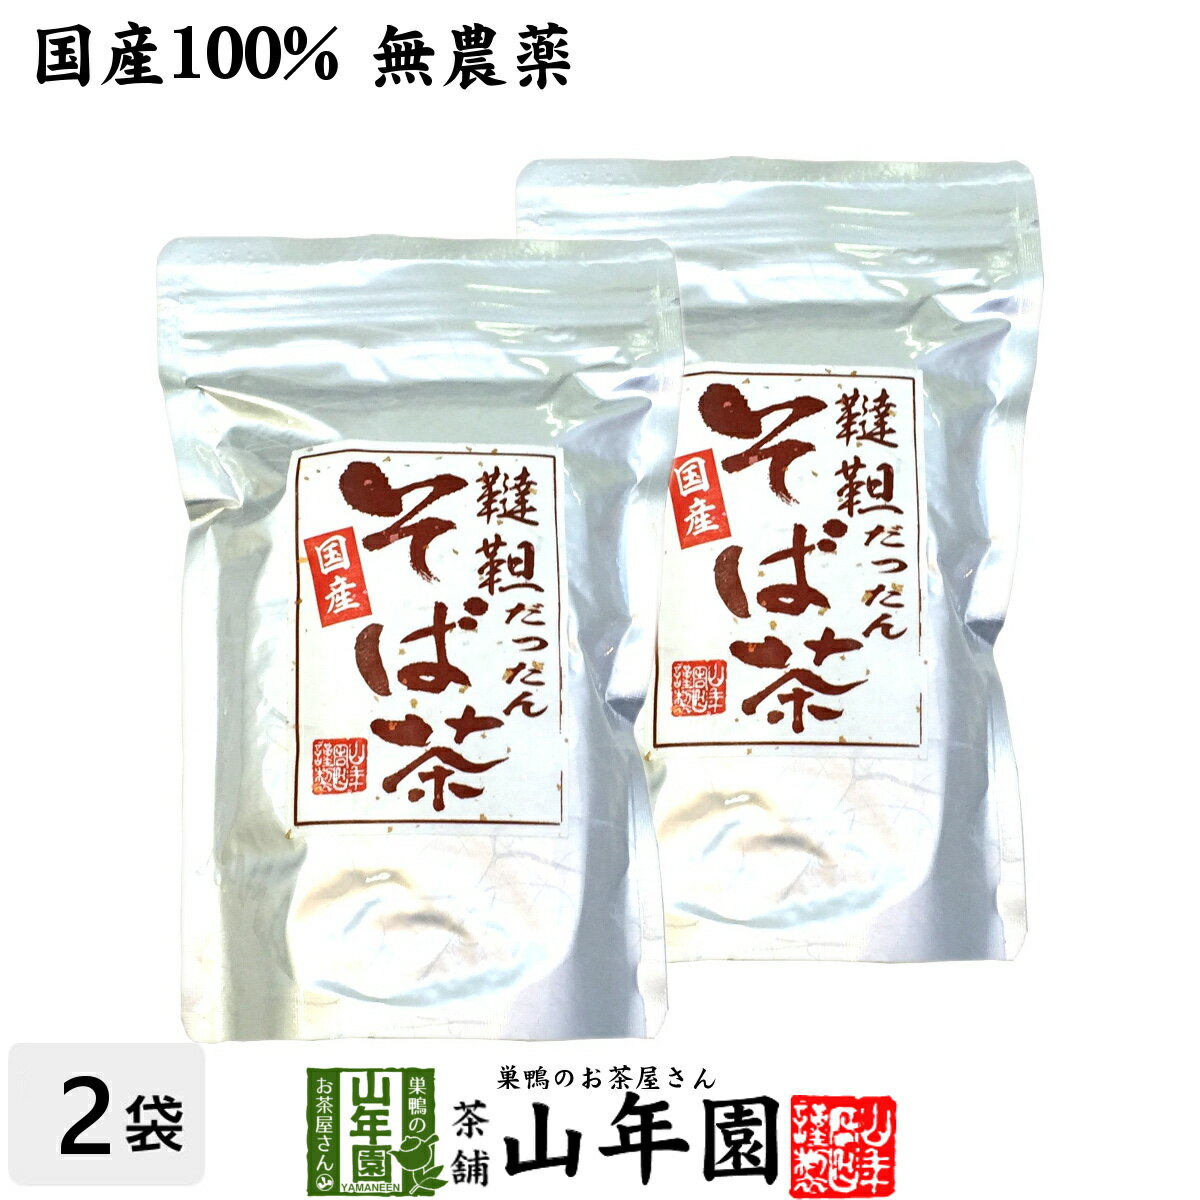 商品名 韃靼そば茶 商品区分 飲料 内容量 300g×2袋セット 原産地 日本産北海道産 使用方法 マグカップに2〜3杯のダッタンそば茶を入れ、熱湯を注いでお飲みください。飲みながら、スプーンでダッタンソバの実も食べちゃってください。(ビタミンPやその他の有効成分が実の方に残っています）冷やして飲む場合は麦茶を飲む要領で煮出してから冷蔵庫で冷やしてください。 使用上の注意 開封後はお早めに召し上がりください。 保存方法 常温保管してください。高温多湿、直射日光は避けて保管してください。 賞味期限 製造日より約12ヶ月 販売事業者名 有限会社山年園〒170-0002東京都豊島区巣鴨3-34-1 店長の一言 ノンカフェインなので、夕食後、風呂上りなどの水分補給にもオススメです。また、お茶漬けや、ふりかけ、サラダなどのトッピング、ご飯と一緒に炊き込むのもオススメです(^-^)